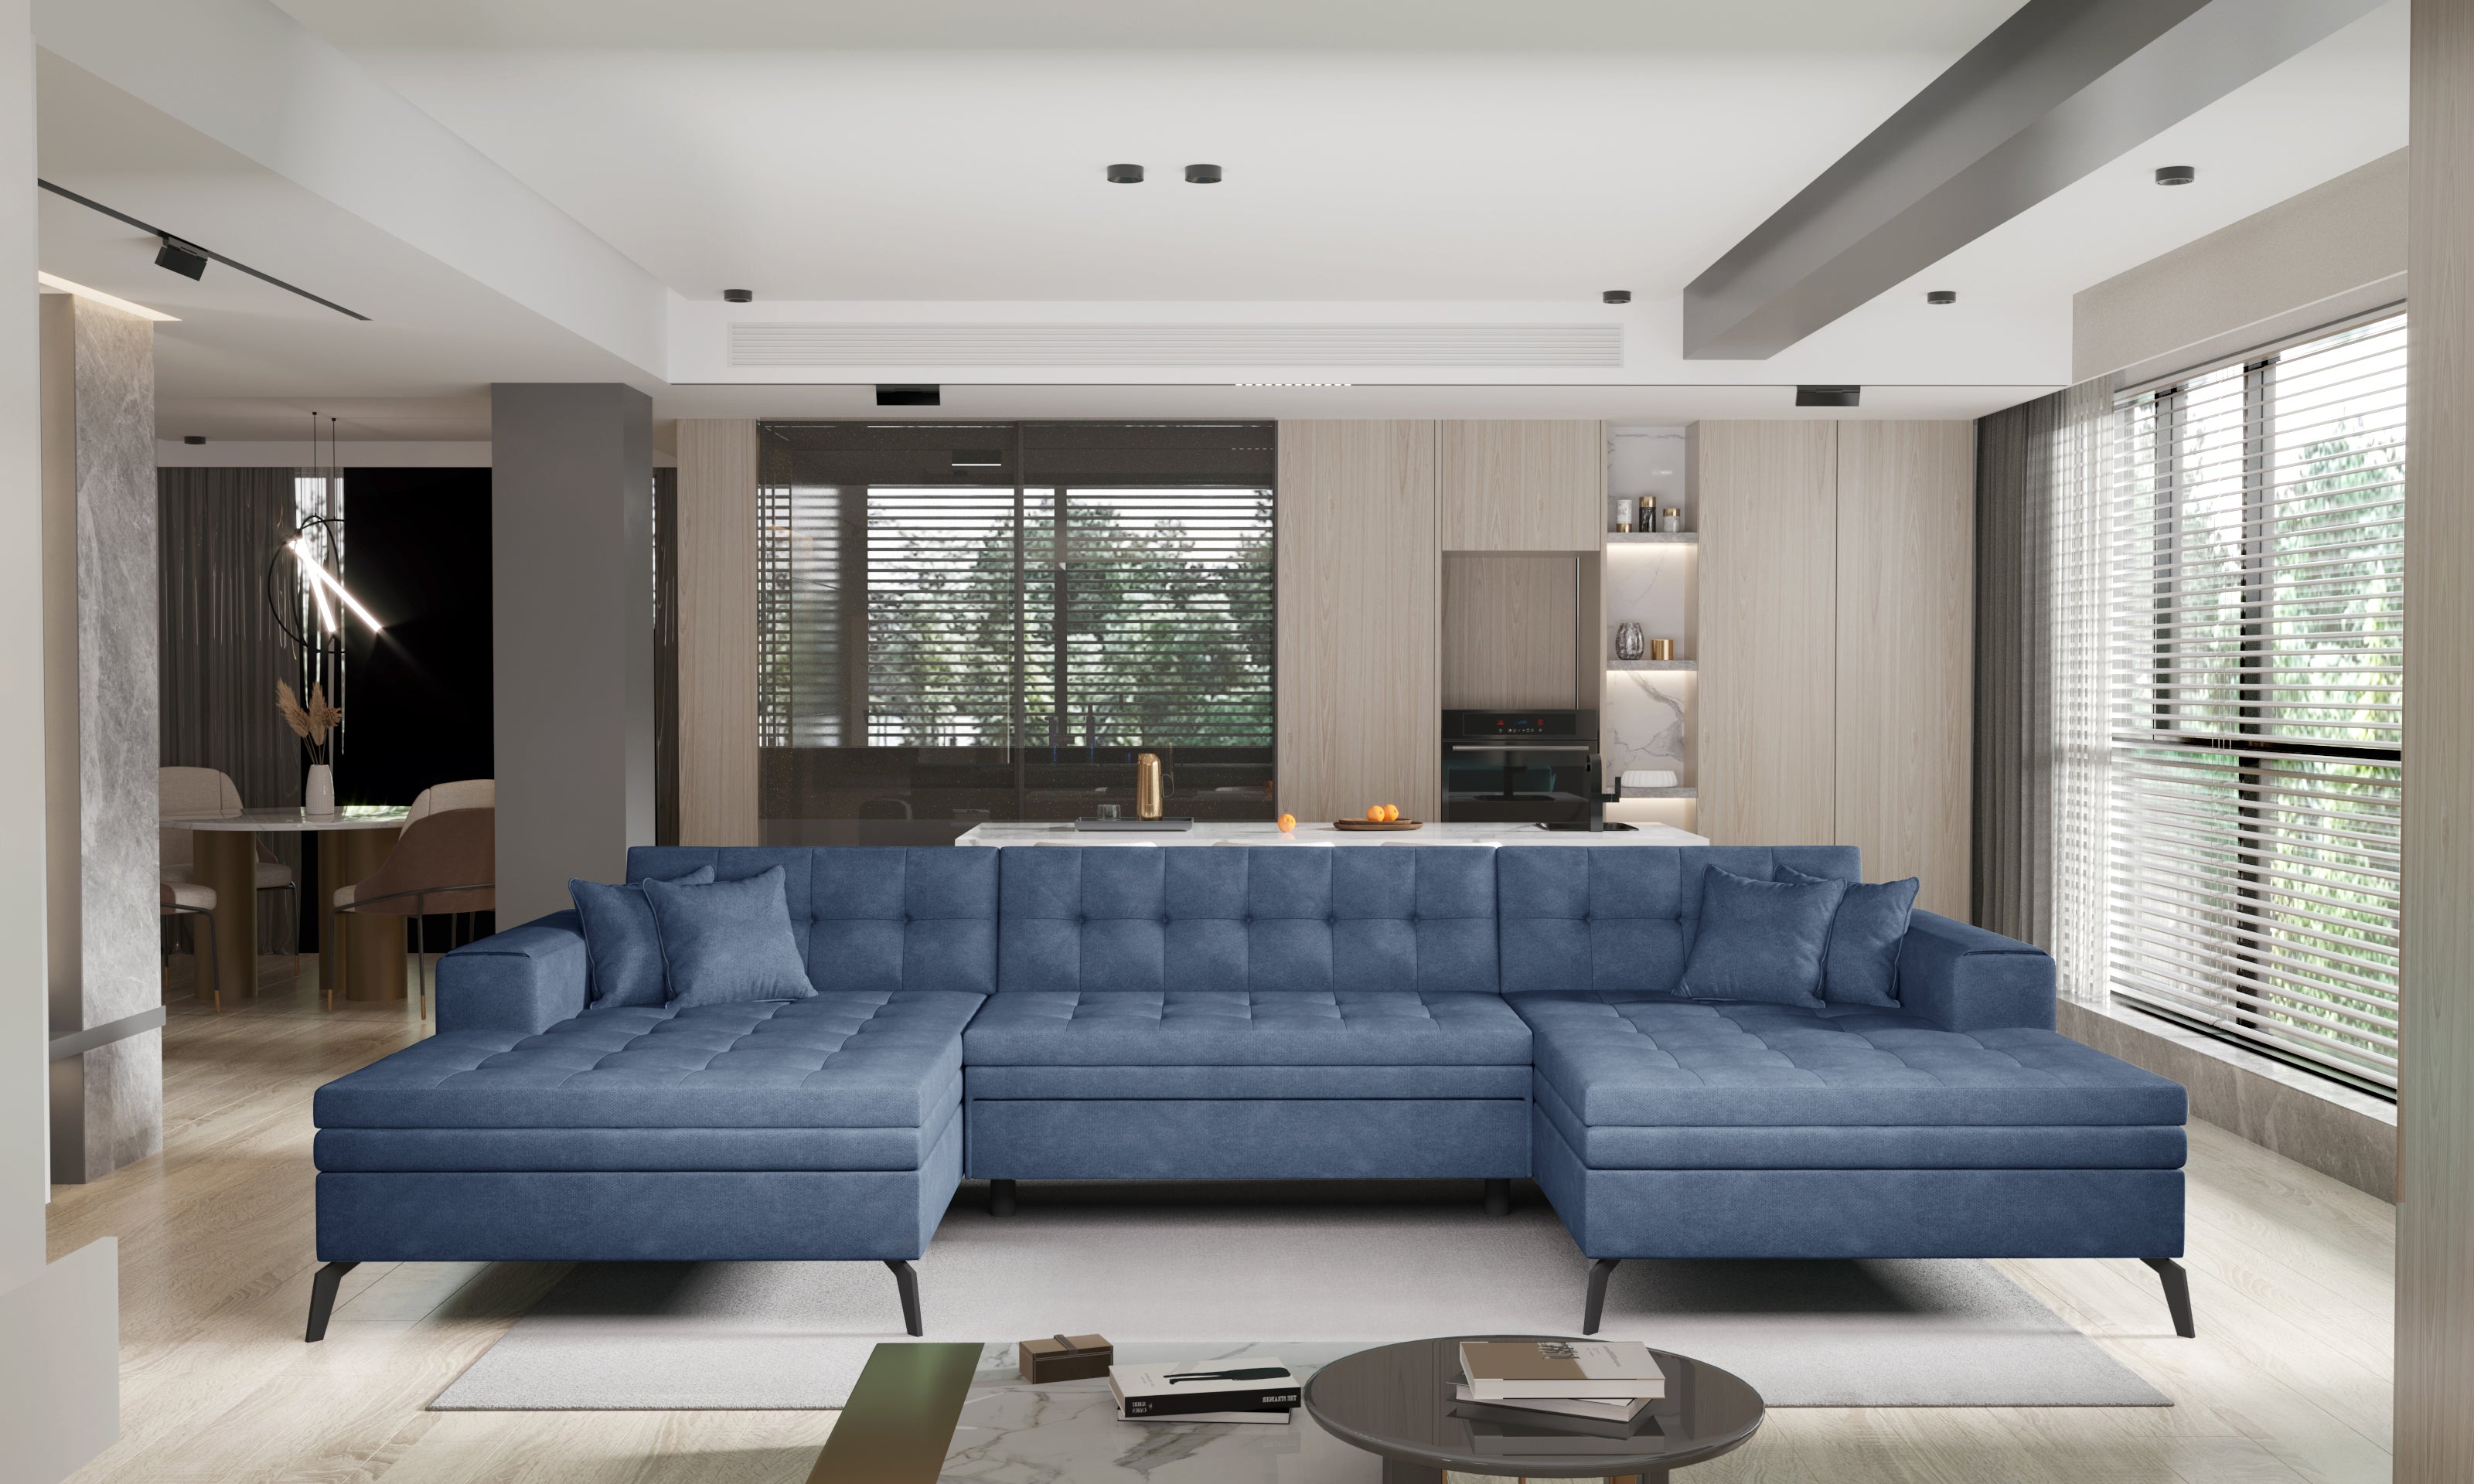 Razones para tener un sofá rinconera en el salón - Foto 1